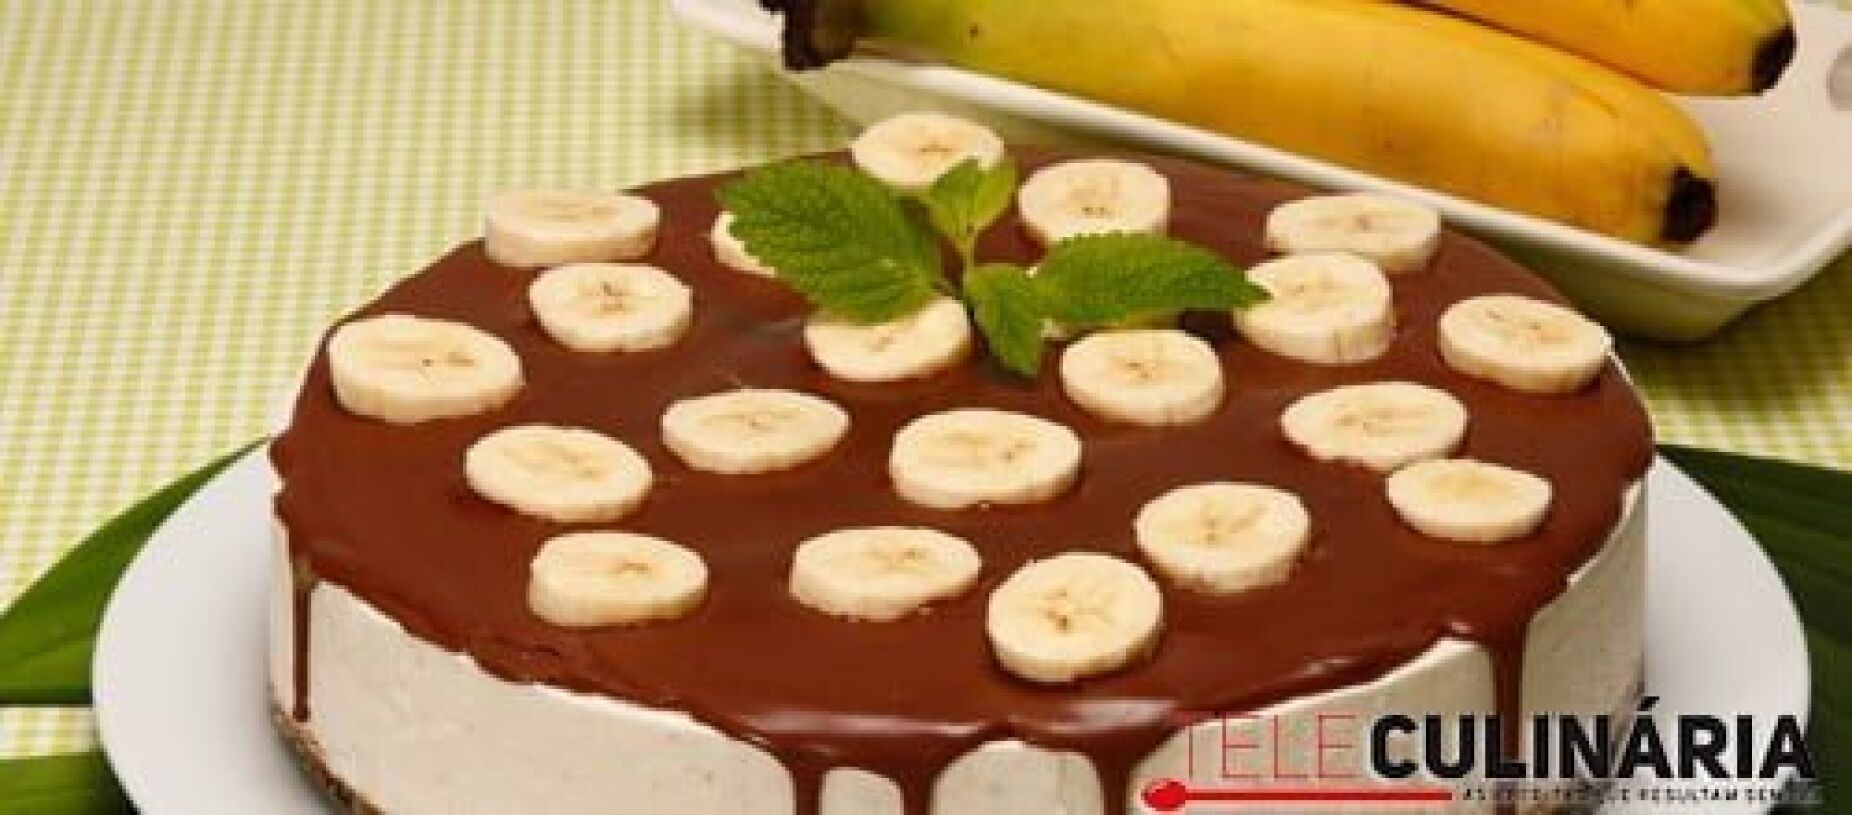 Cheesecake de banana com calda de chocolate